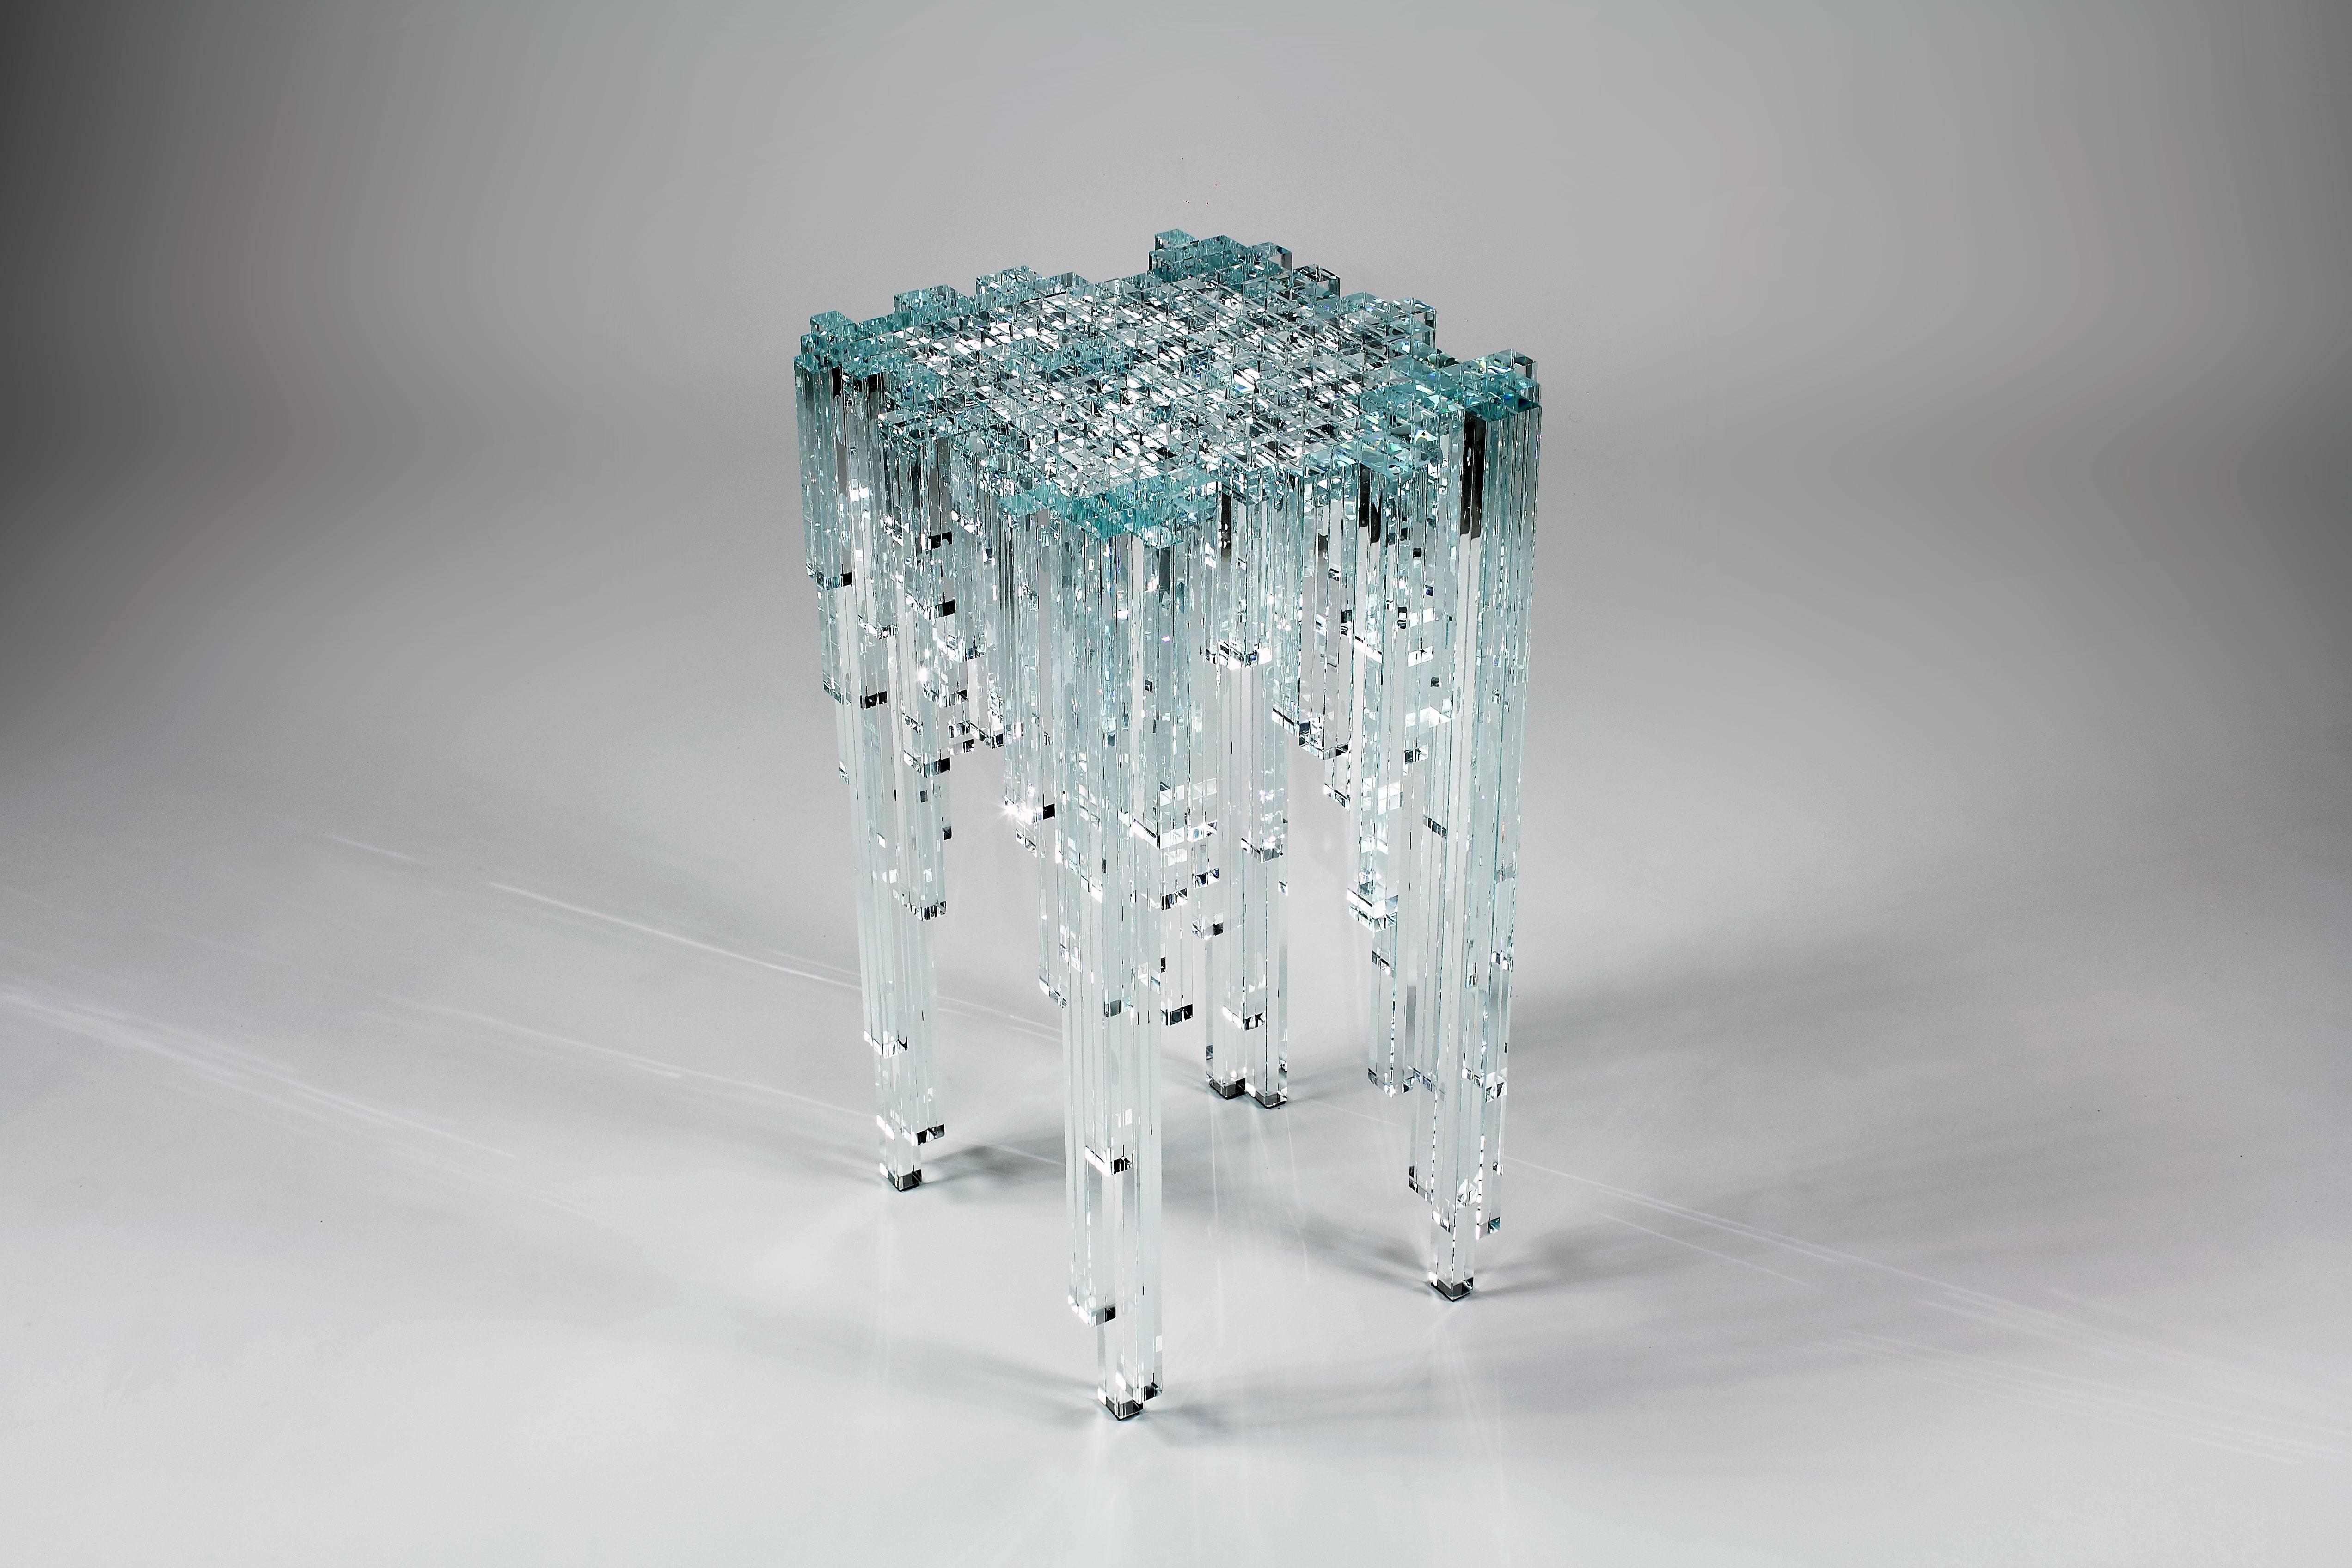 La table d'appoint 'Cascata'  est composé de 219 éléments en verre de cristal assemblés à la main un par un. Cette table brille comme un joyau. Instant d'un flux perpétuel, eau immobile d'une cascade de cristal